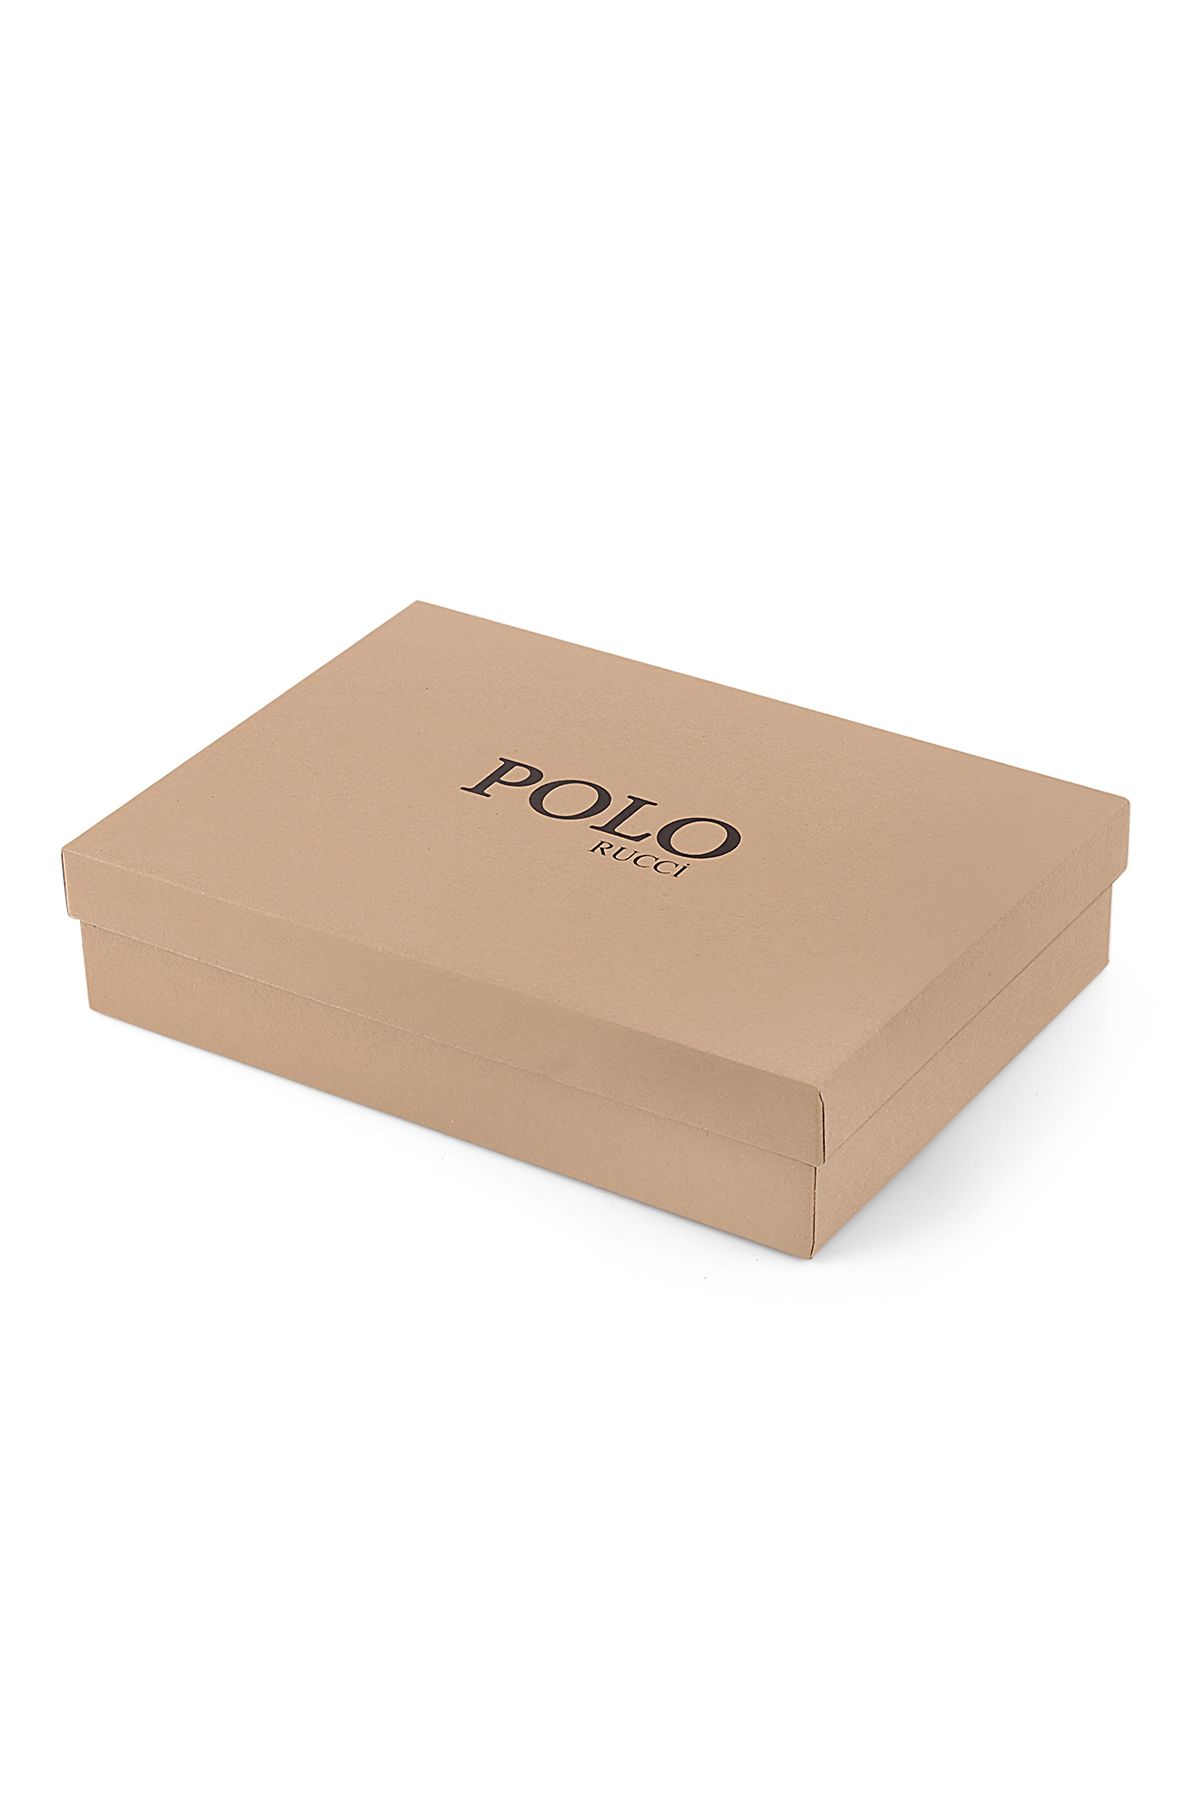 Polo Rucci Erkek Set Kombin Kol Saati Kemer Cüzdan Gümüş İçi Lacivert Renk PL-0804E1